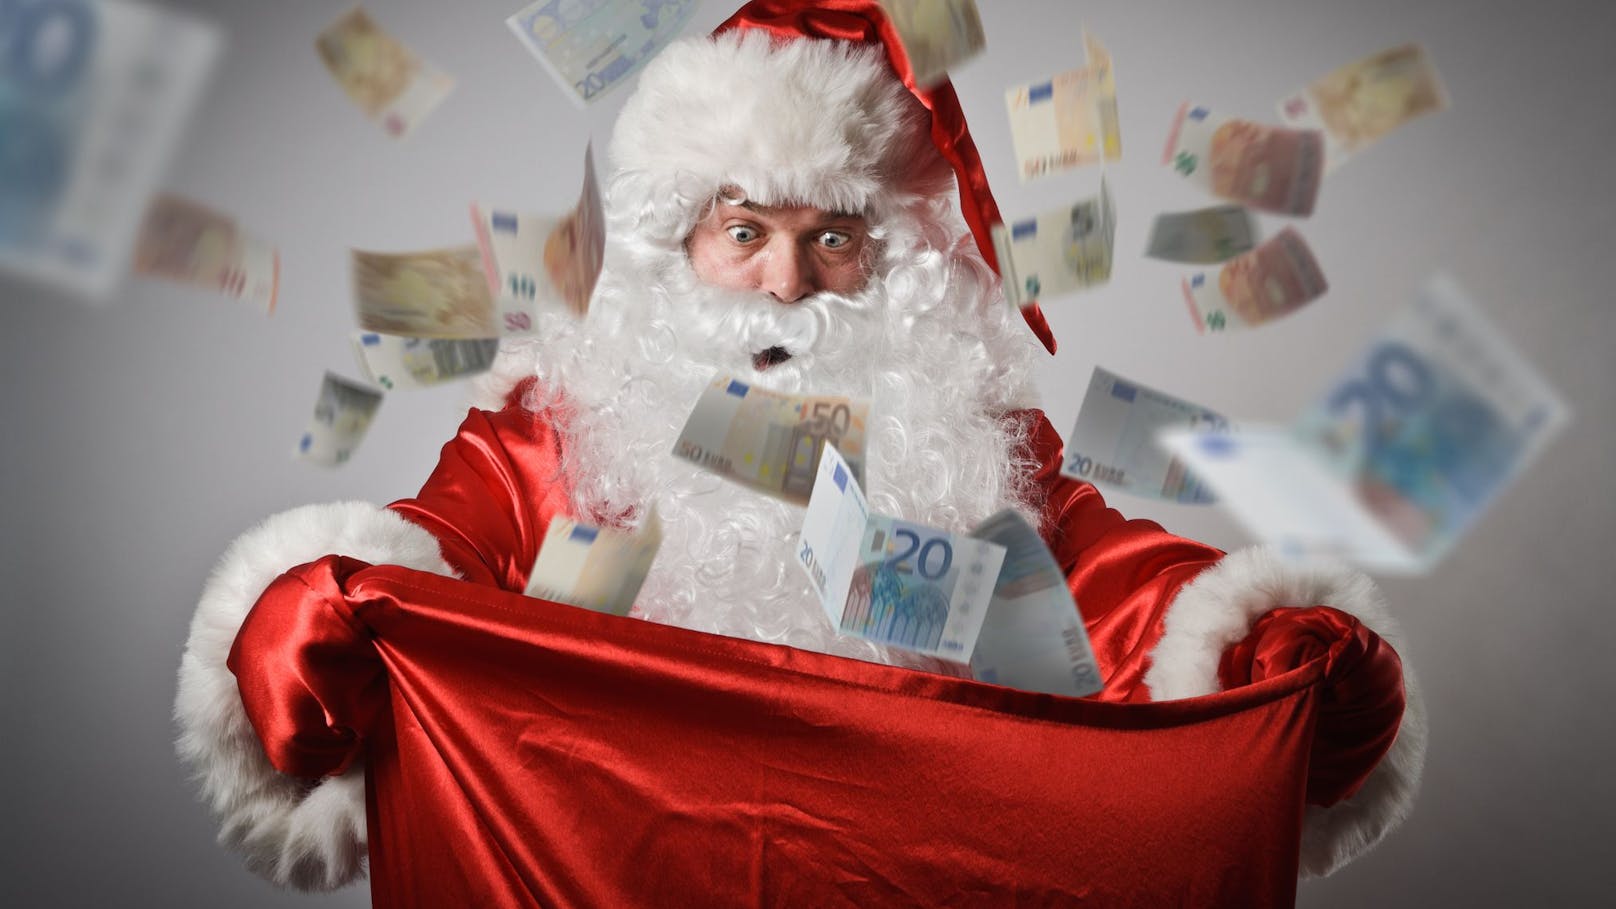 Viva la Navidad: El Gordo bringt Weihnachten zu dir!